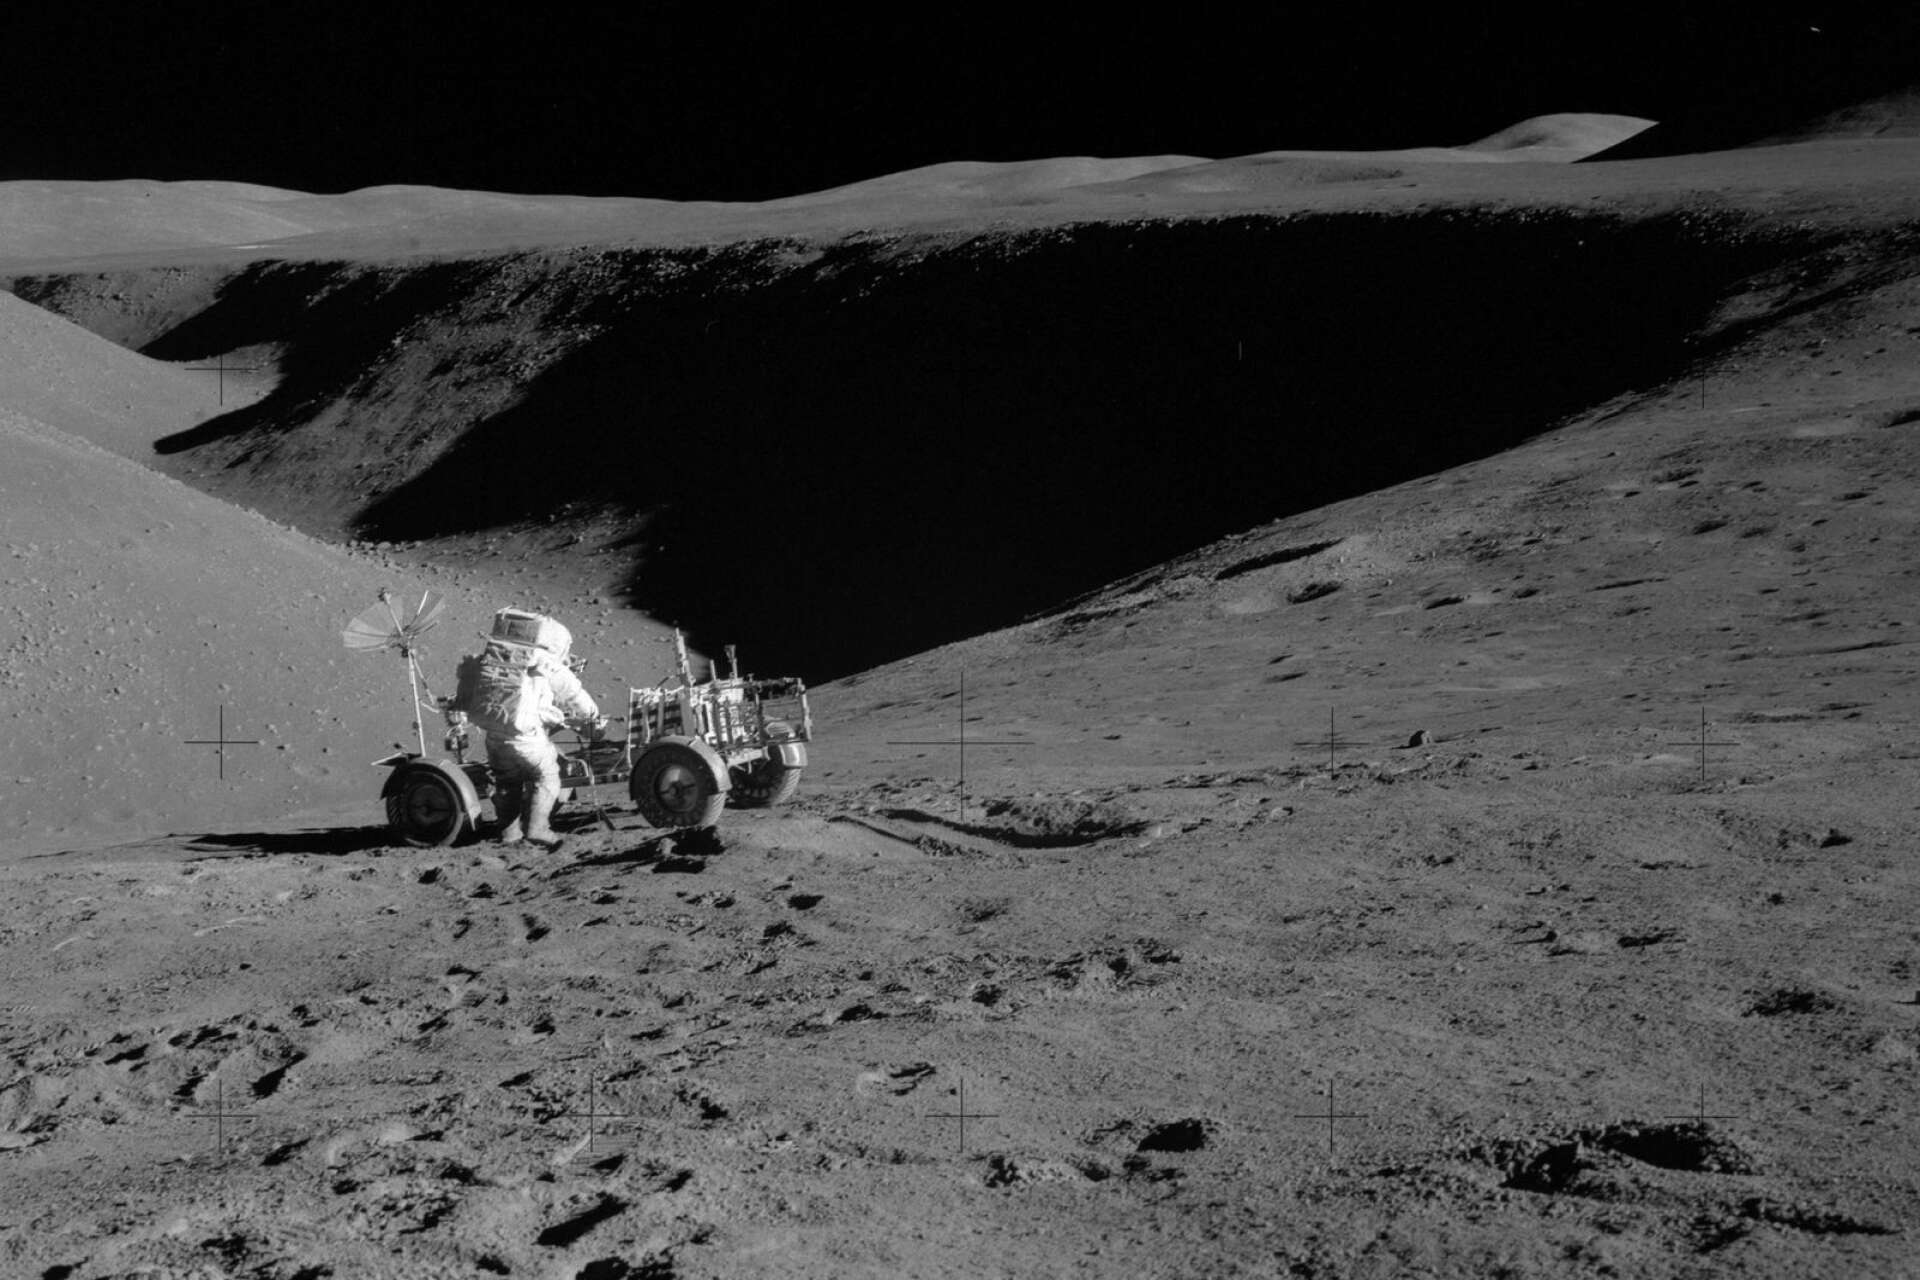 Dave Scott och månbilen vid Hadley Rille i närheten av Elbow-kratern.